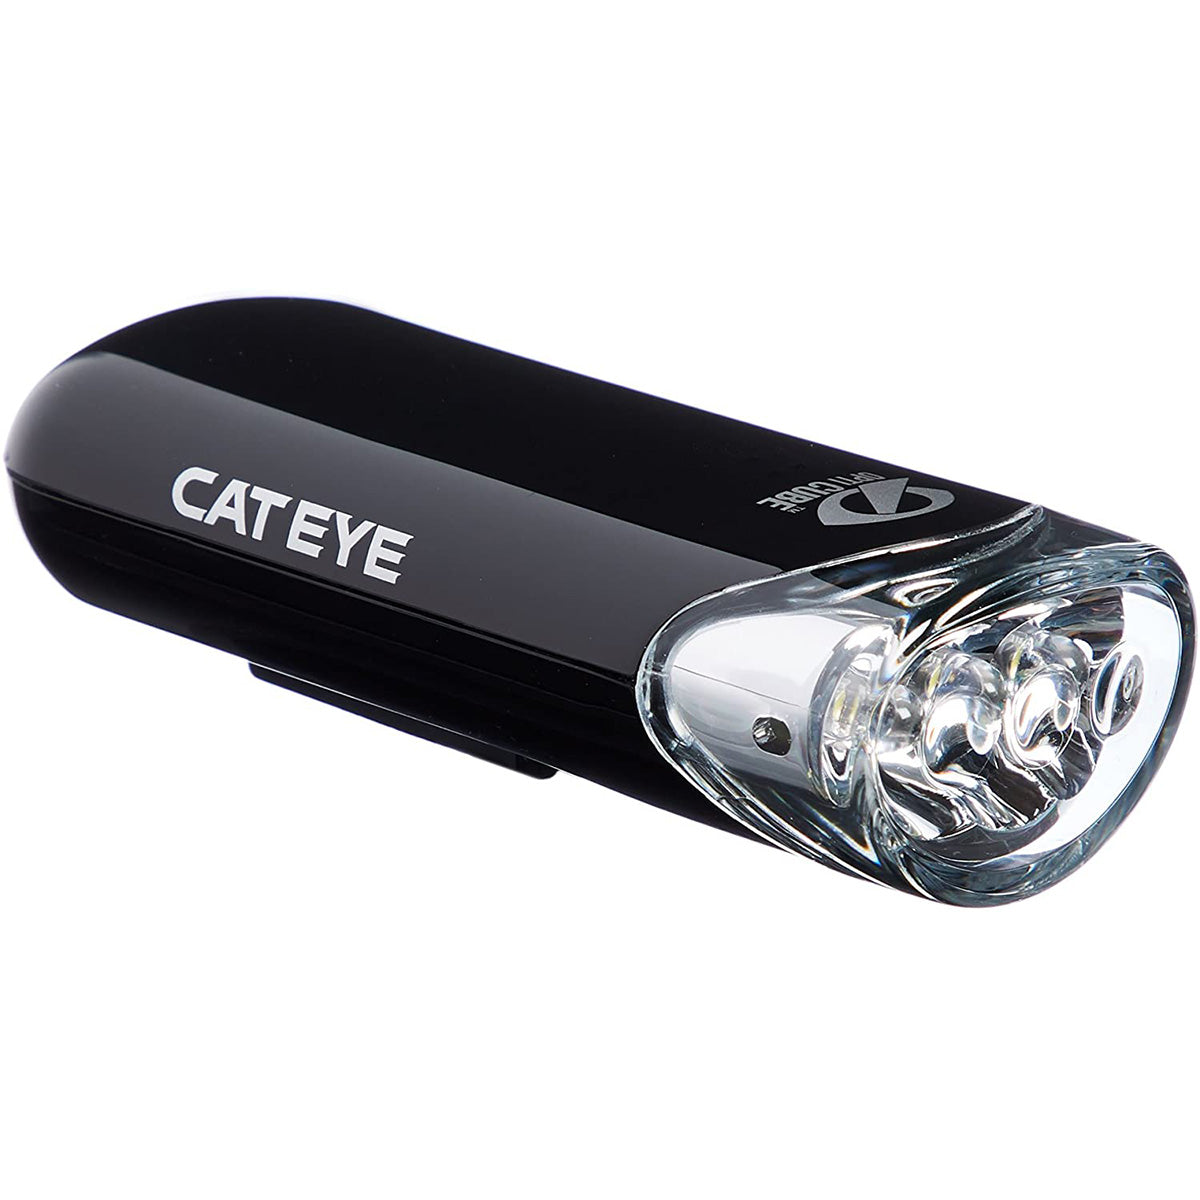 CatEye Cycling Headlight - HL-EL135N Black CatEye